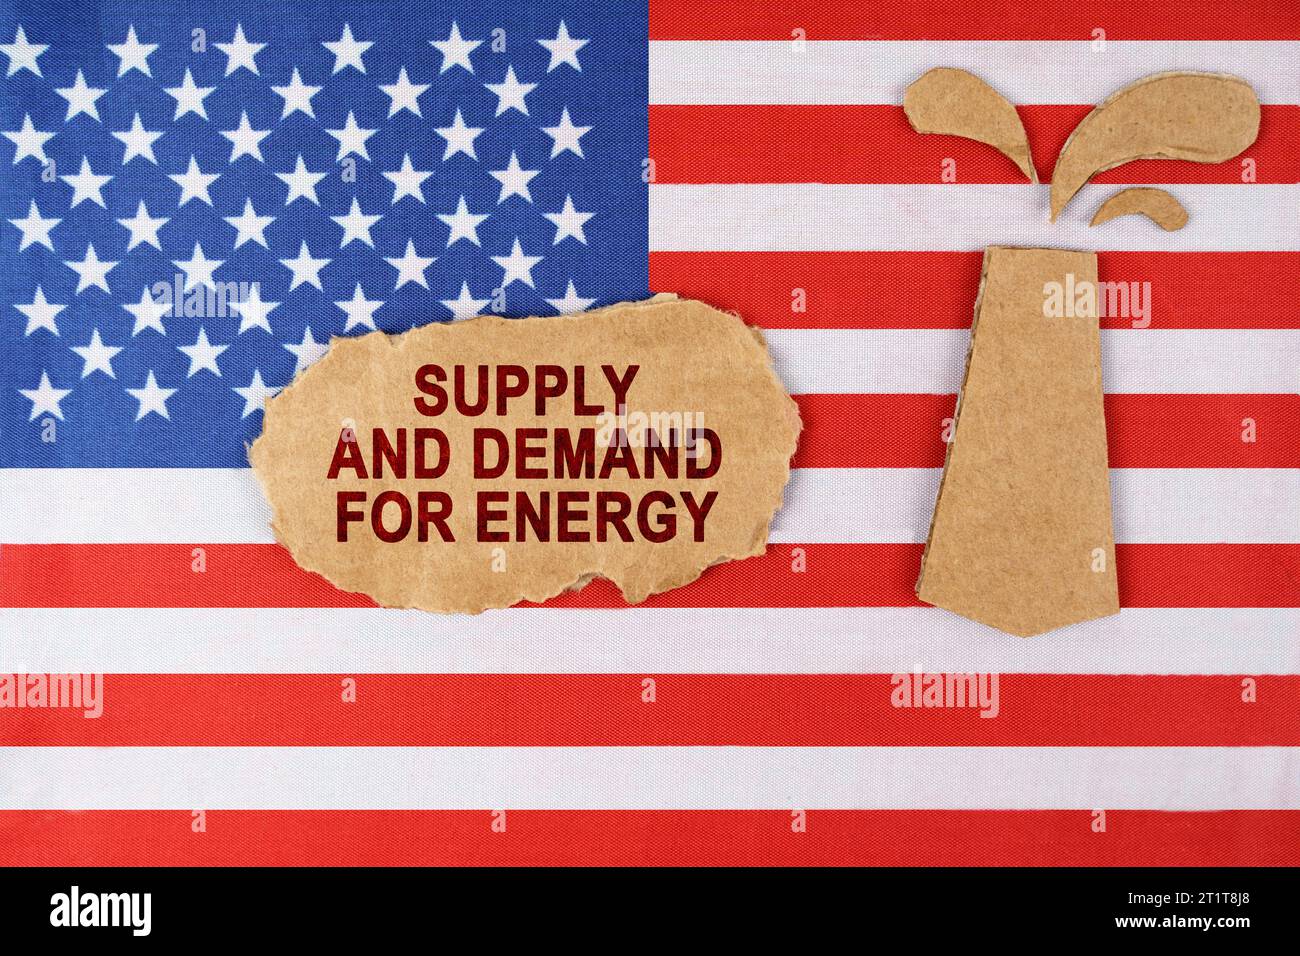 Sulla bandiera degli Stati Uniti c'è una piattaforma petrolifera tagliata fuori dal cartone e un cartello con l'iscrizione - domanda e offerta di energia. Foto Stock